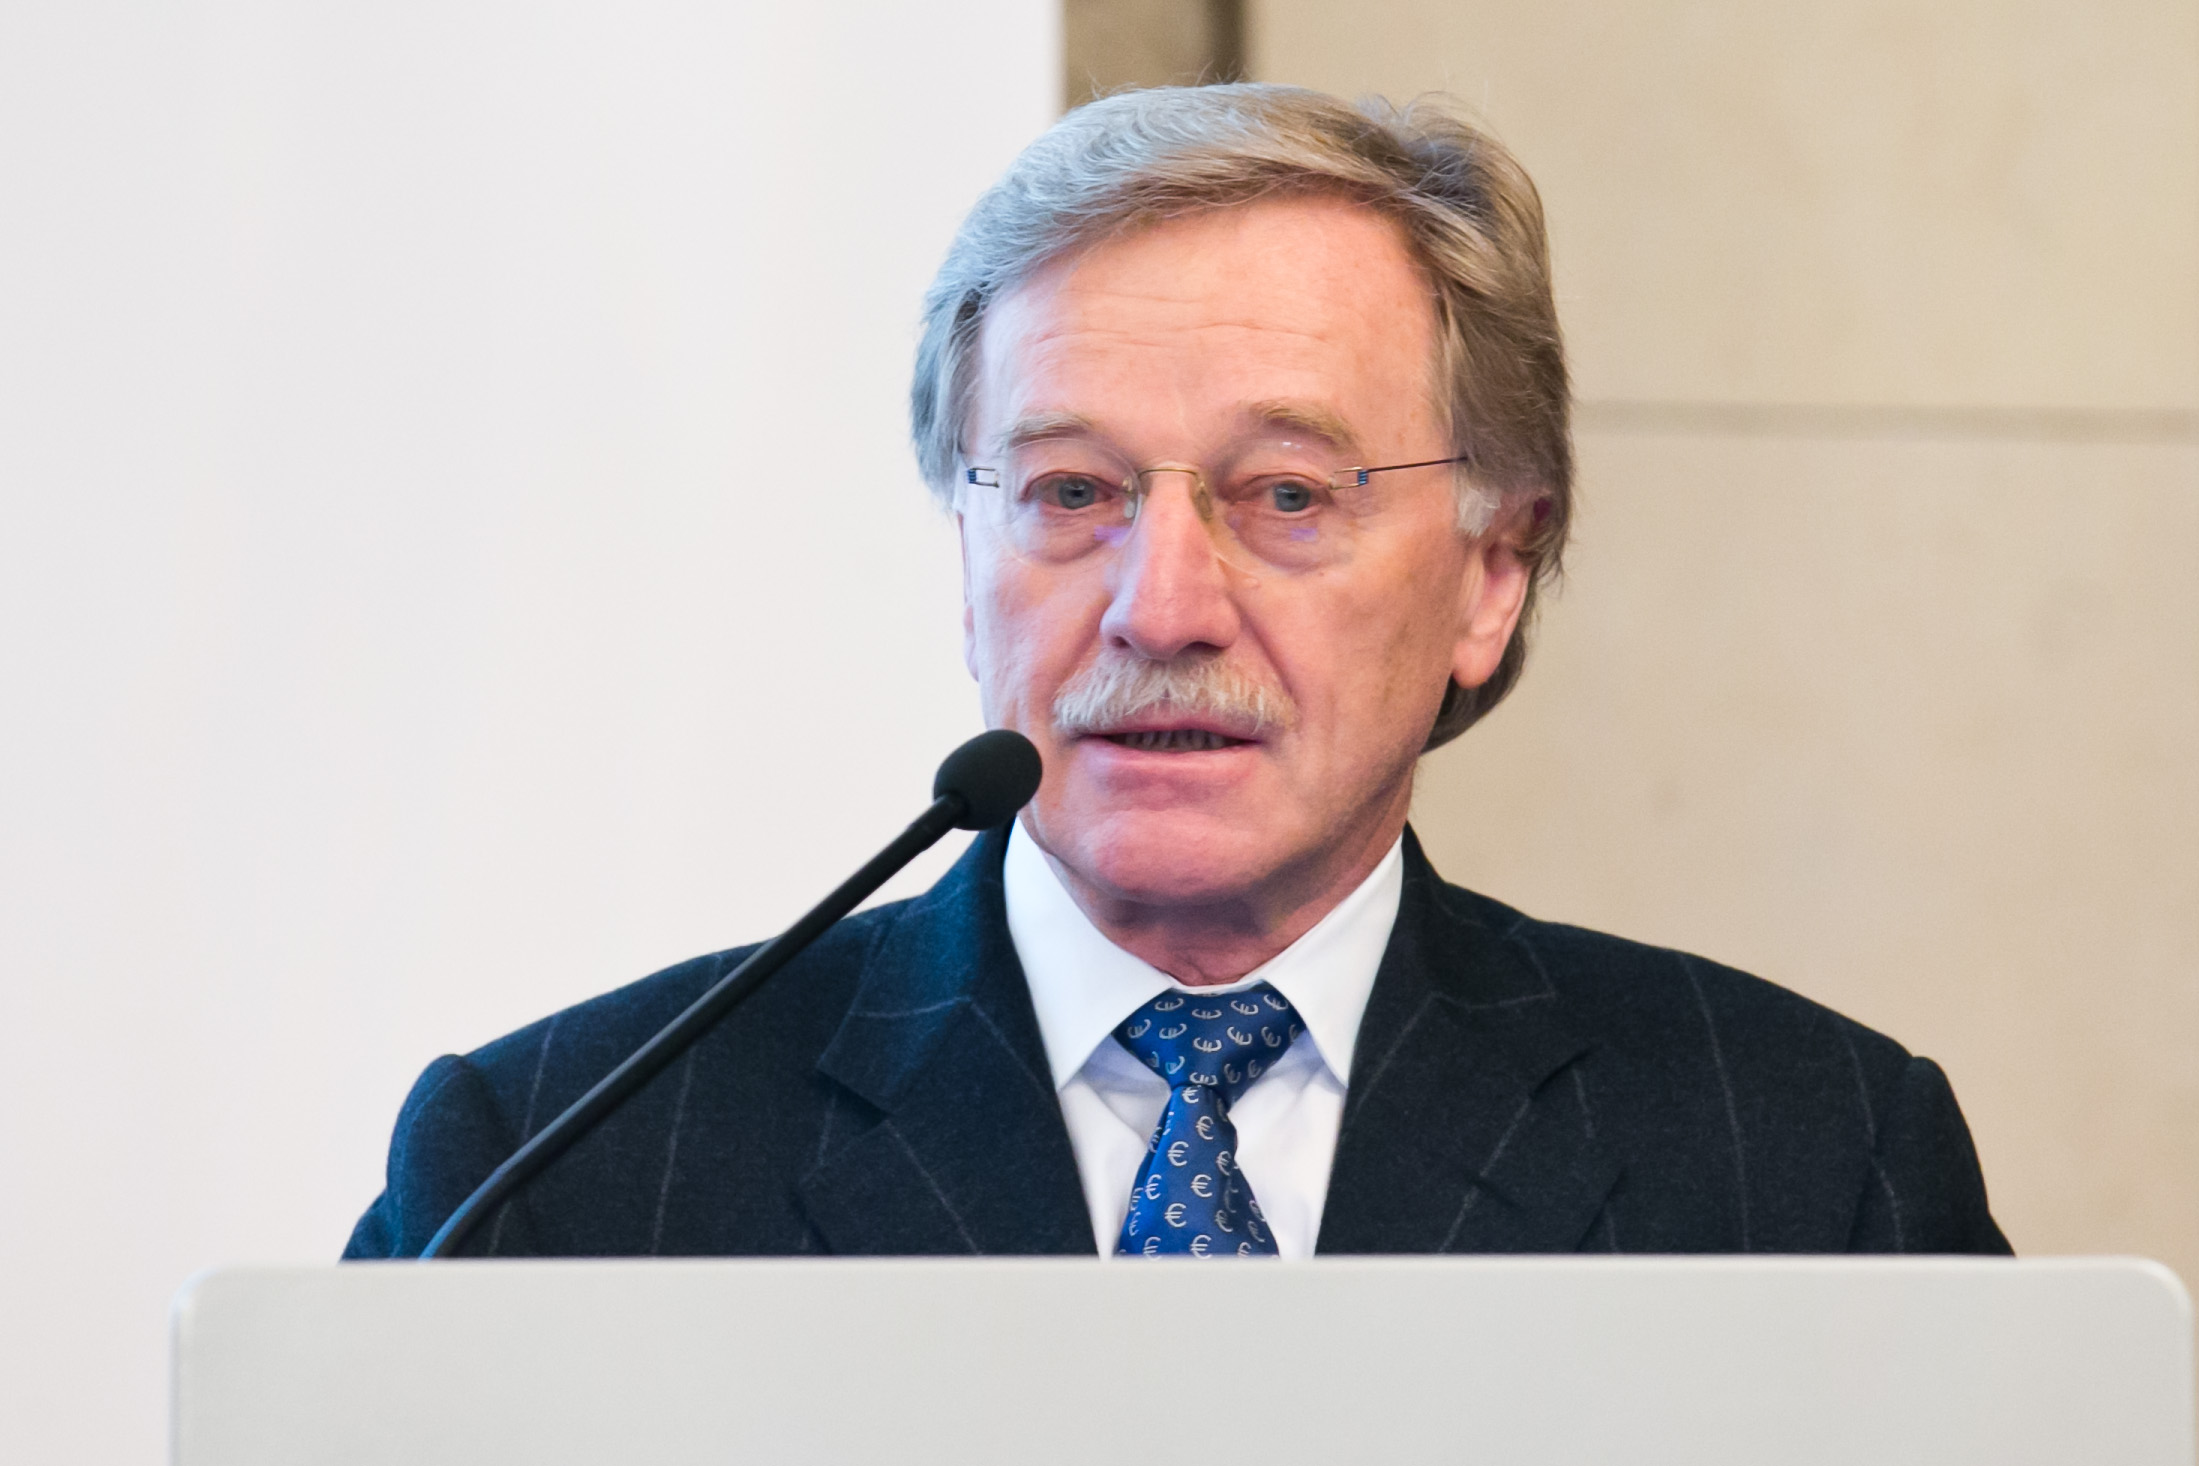 Yves Mersch, ECB's Executive Board member